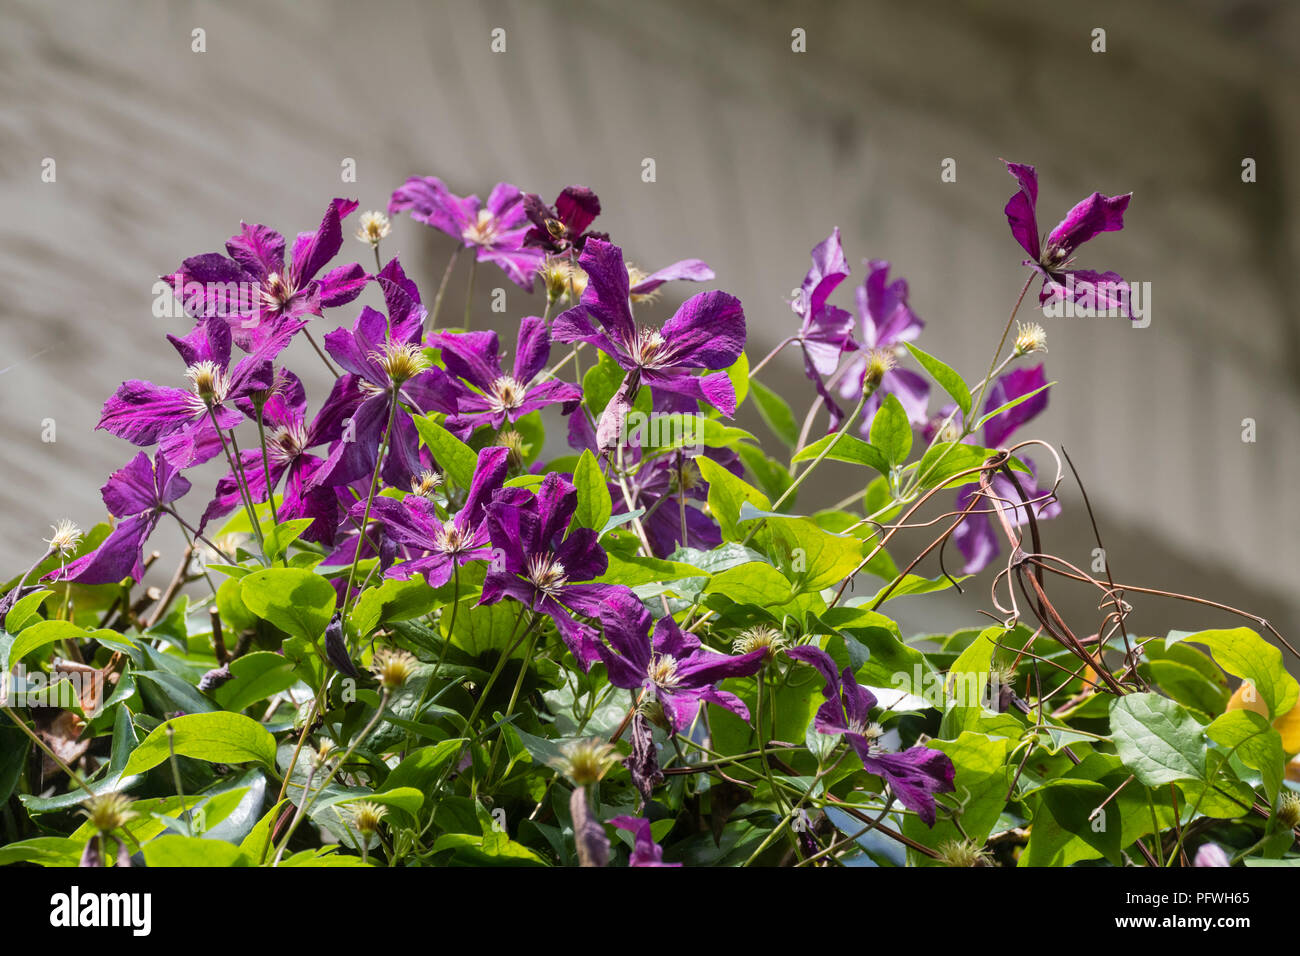 Fleurs violettes de la fin des grandes fleurs, la clématite Clematis 'groupe Kosmicheskaia Melodiia' Banque D'Images